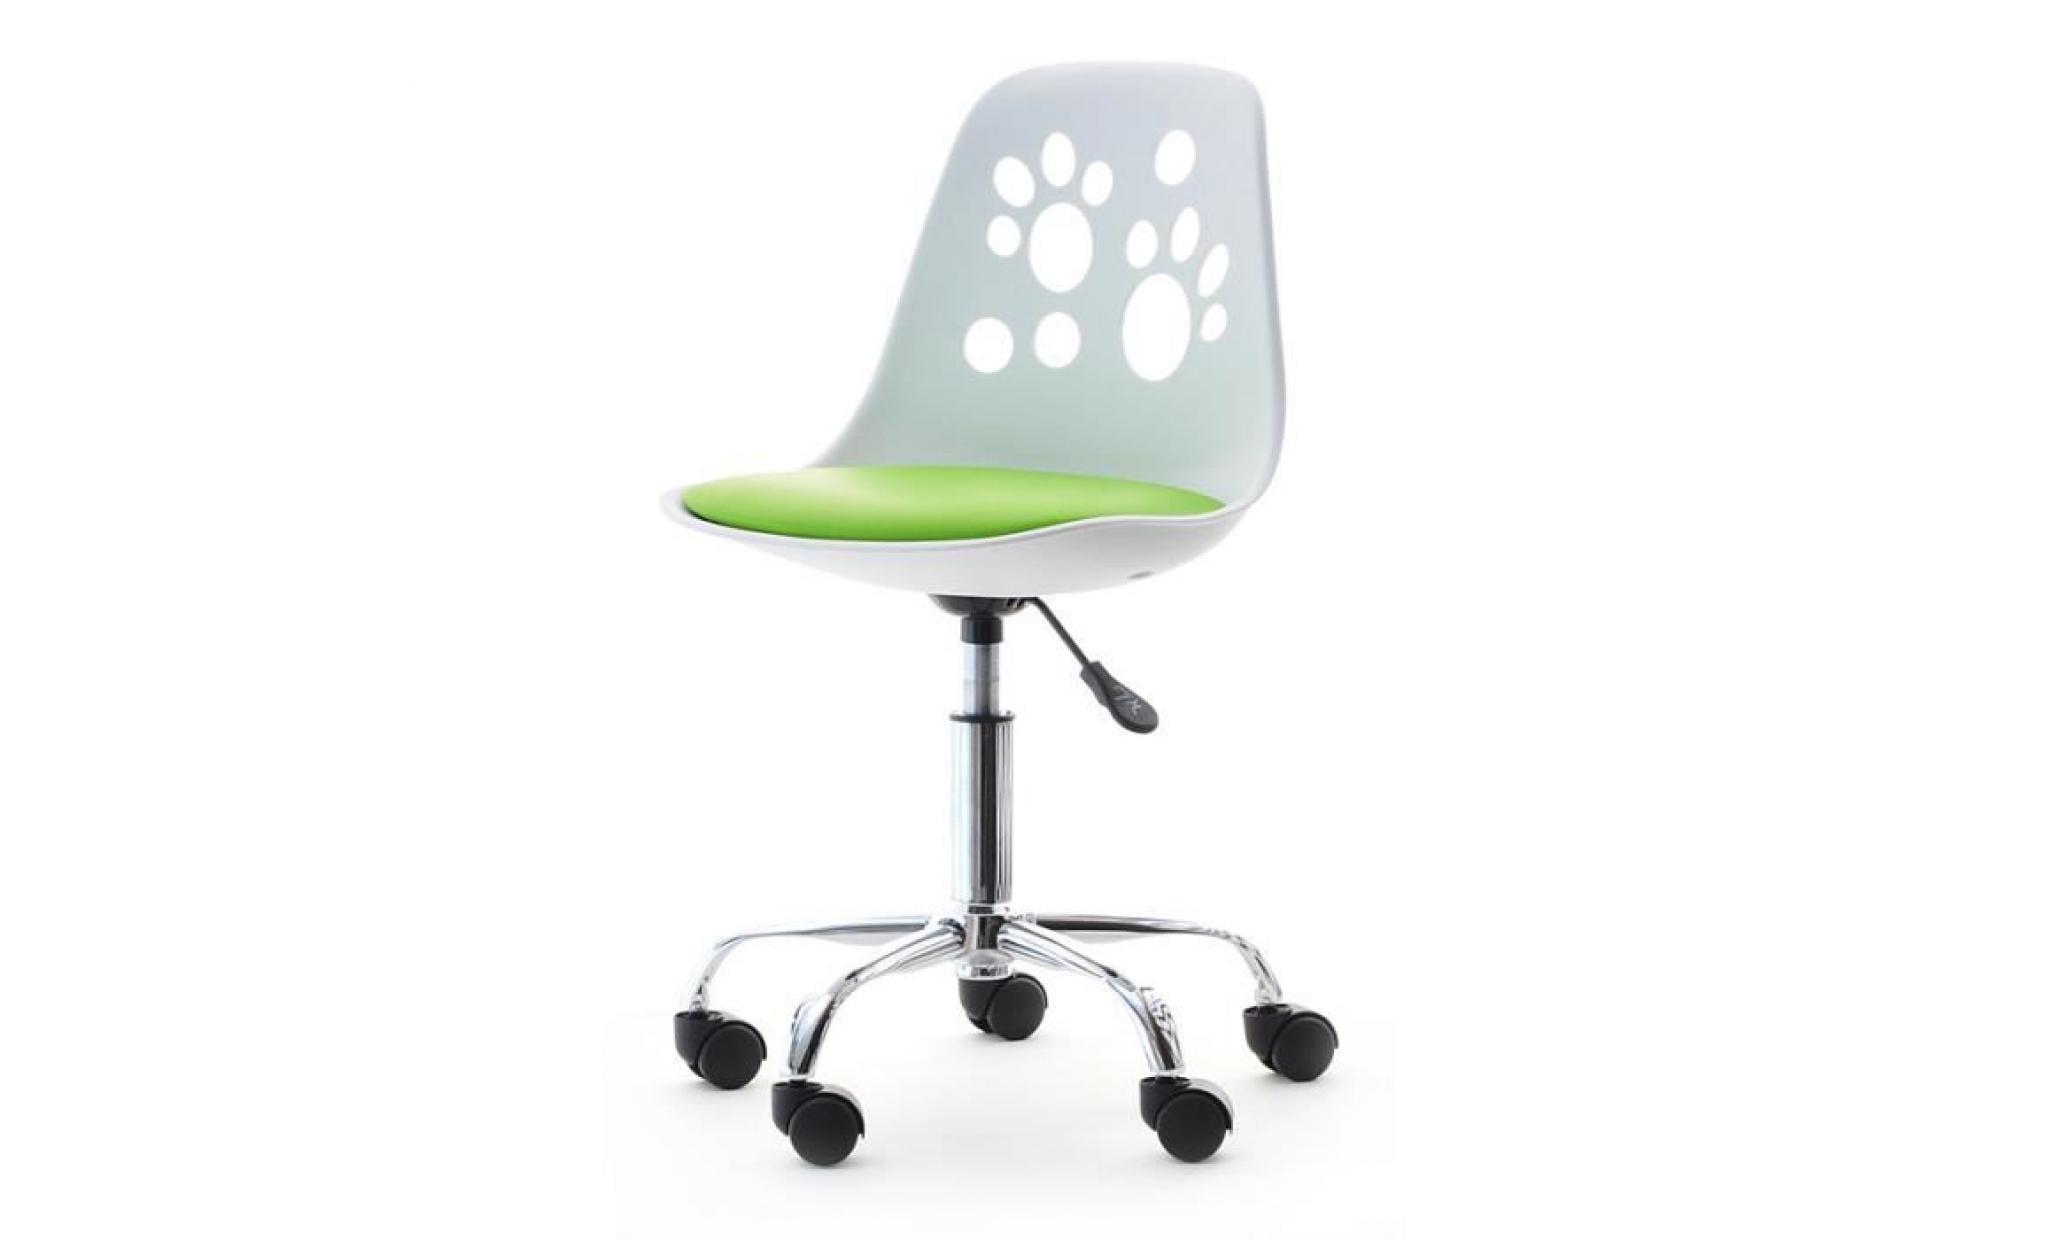 fauteuil d'enfant / chaise de bureau   foot   40 cm   citron vert   design moderne   réglable   pivotant pas cher